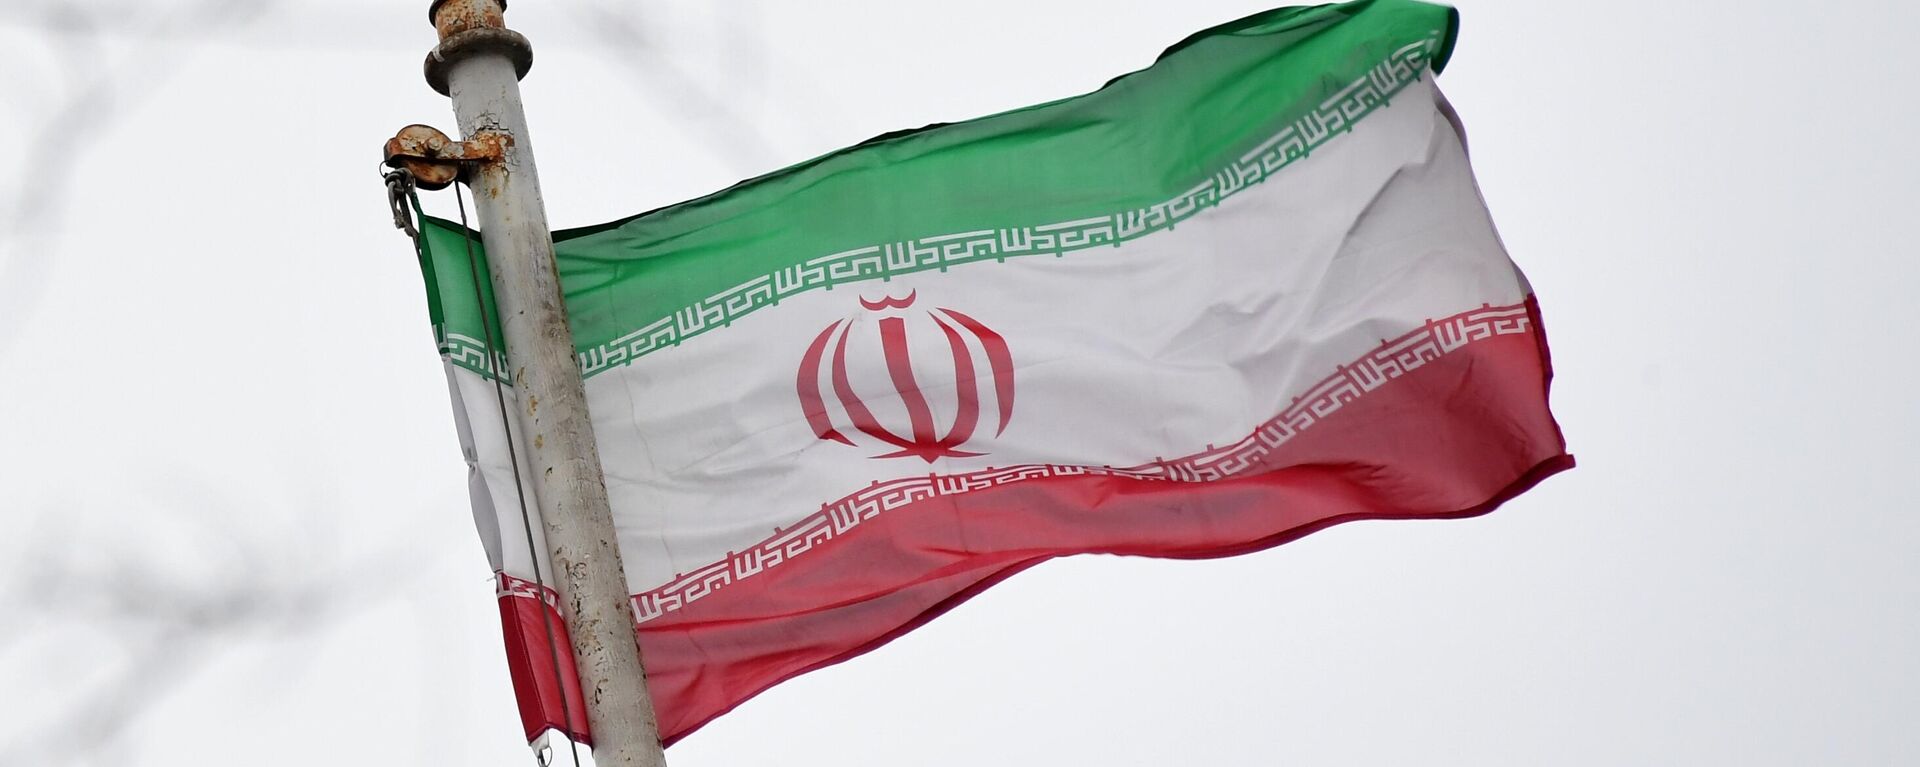 Флаг посольства Исламской Республики Иран на Покровском бульваре в Москве. - Sputnik Узбекистан, 1920, 30.03.2021